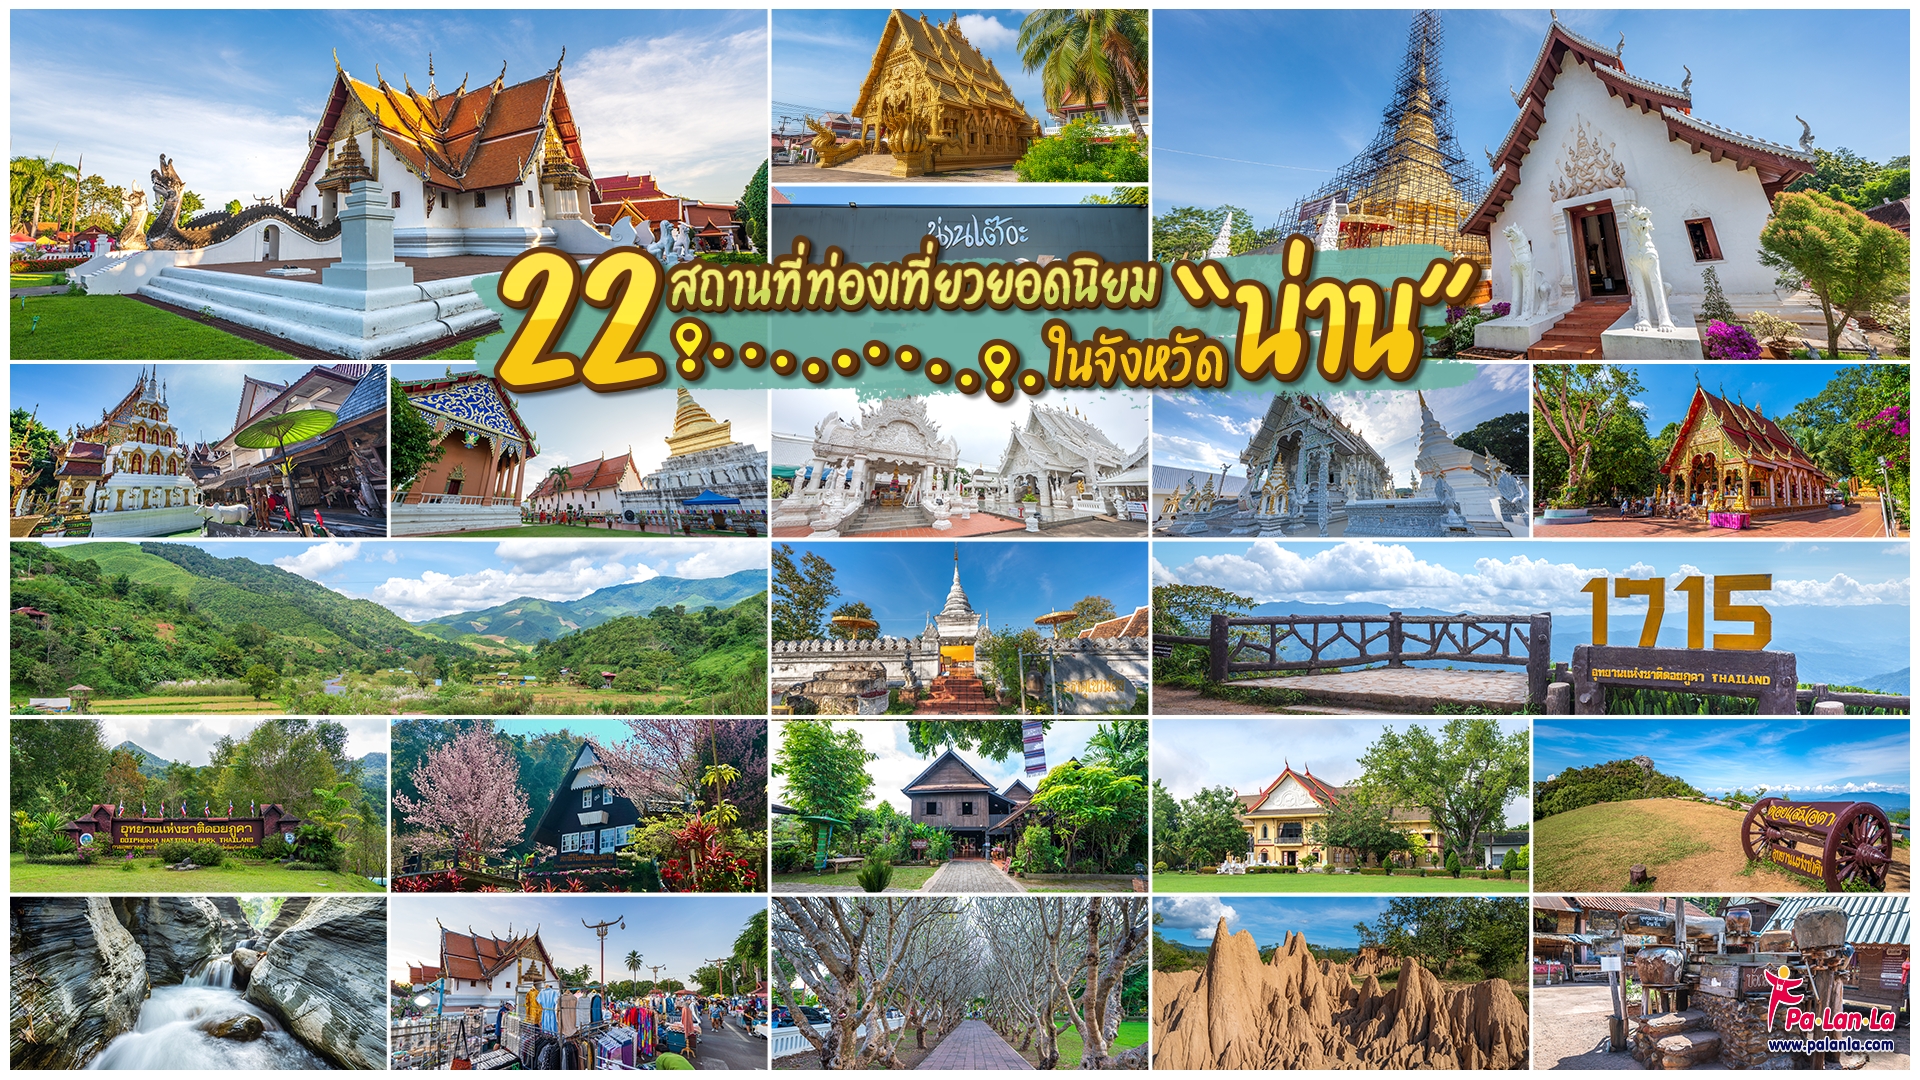 22 สถานที่เที่ยวยอดนิยมในจังหวัดน่าน ประเทศไทย - เพื่อนที่จะพาคุณไปสัมผัสมุมสวยๆ ของทุกสถานที่ท่องเที่ยวทั่วโลก พร้อมแนะนำวีธีการเดินทาง